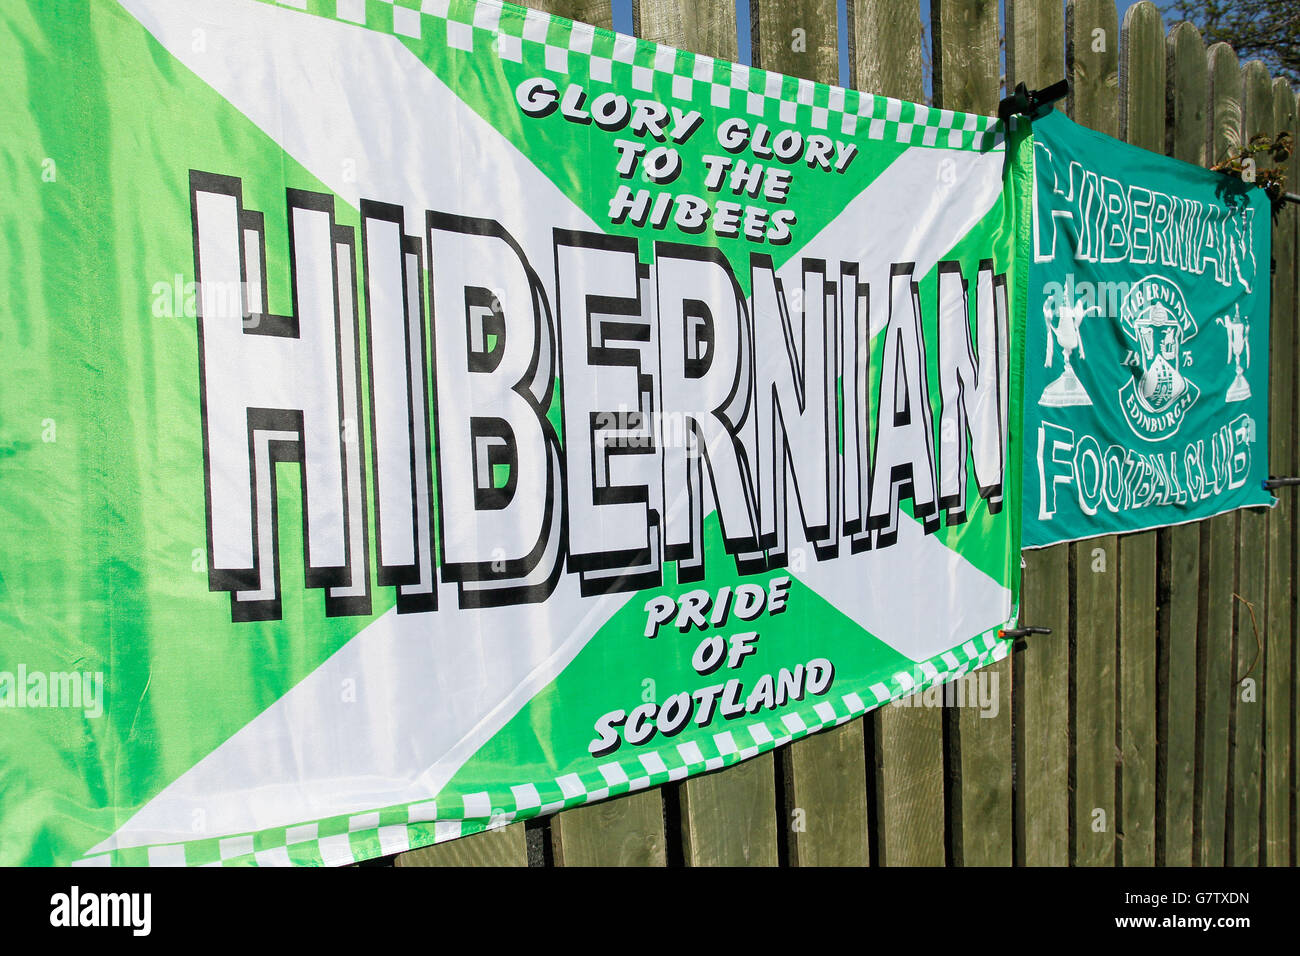 Football - coupe d'Écosse William Hill - demi finale - Hibernian v Falkirk - Hampden Park.Bannières Hiberniennes en vente à l'extérieur de Hampden Park avant la demi-finale de la coupe écossaise William Hill. Banque D'Images